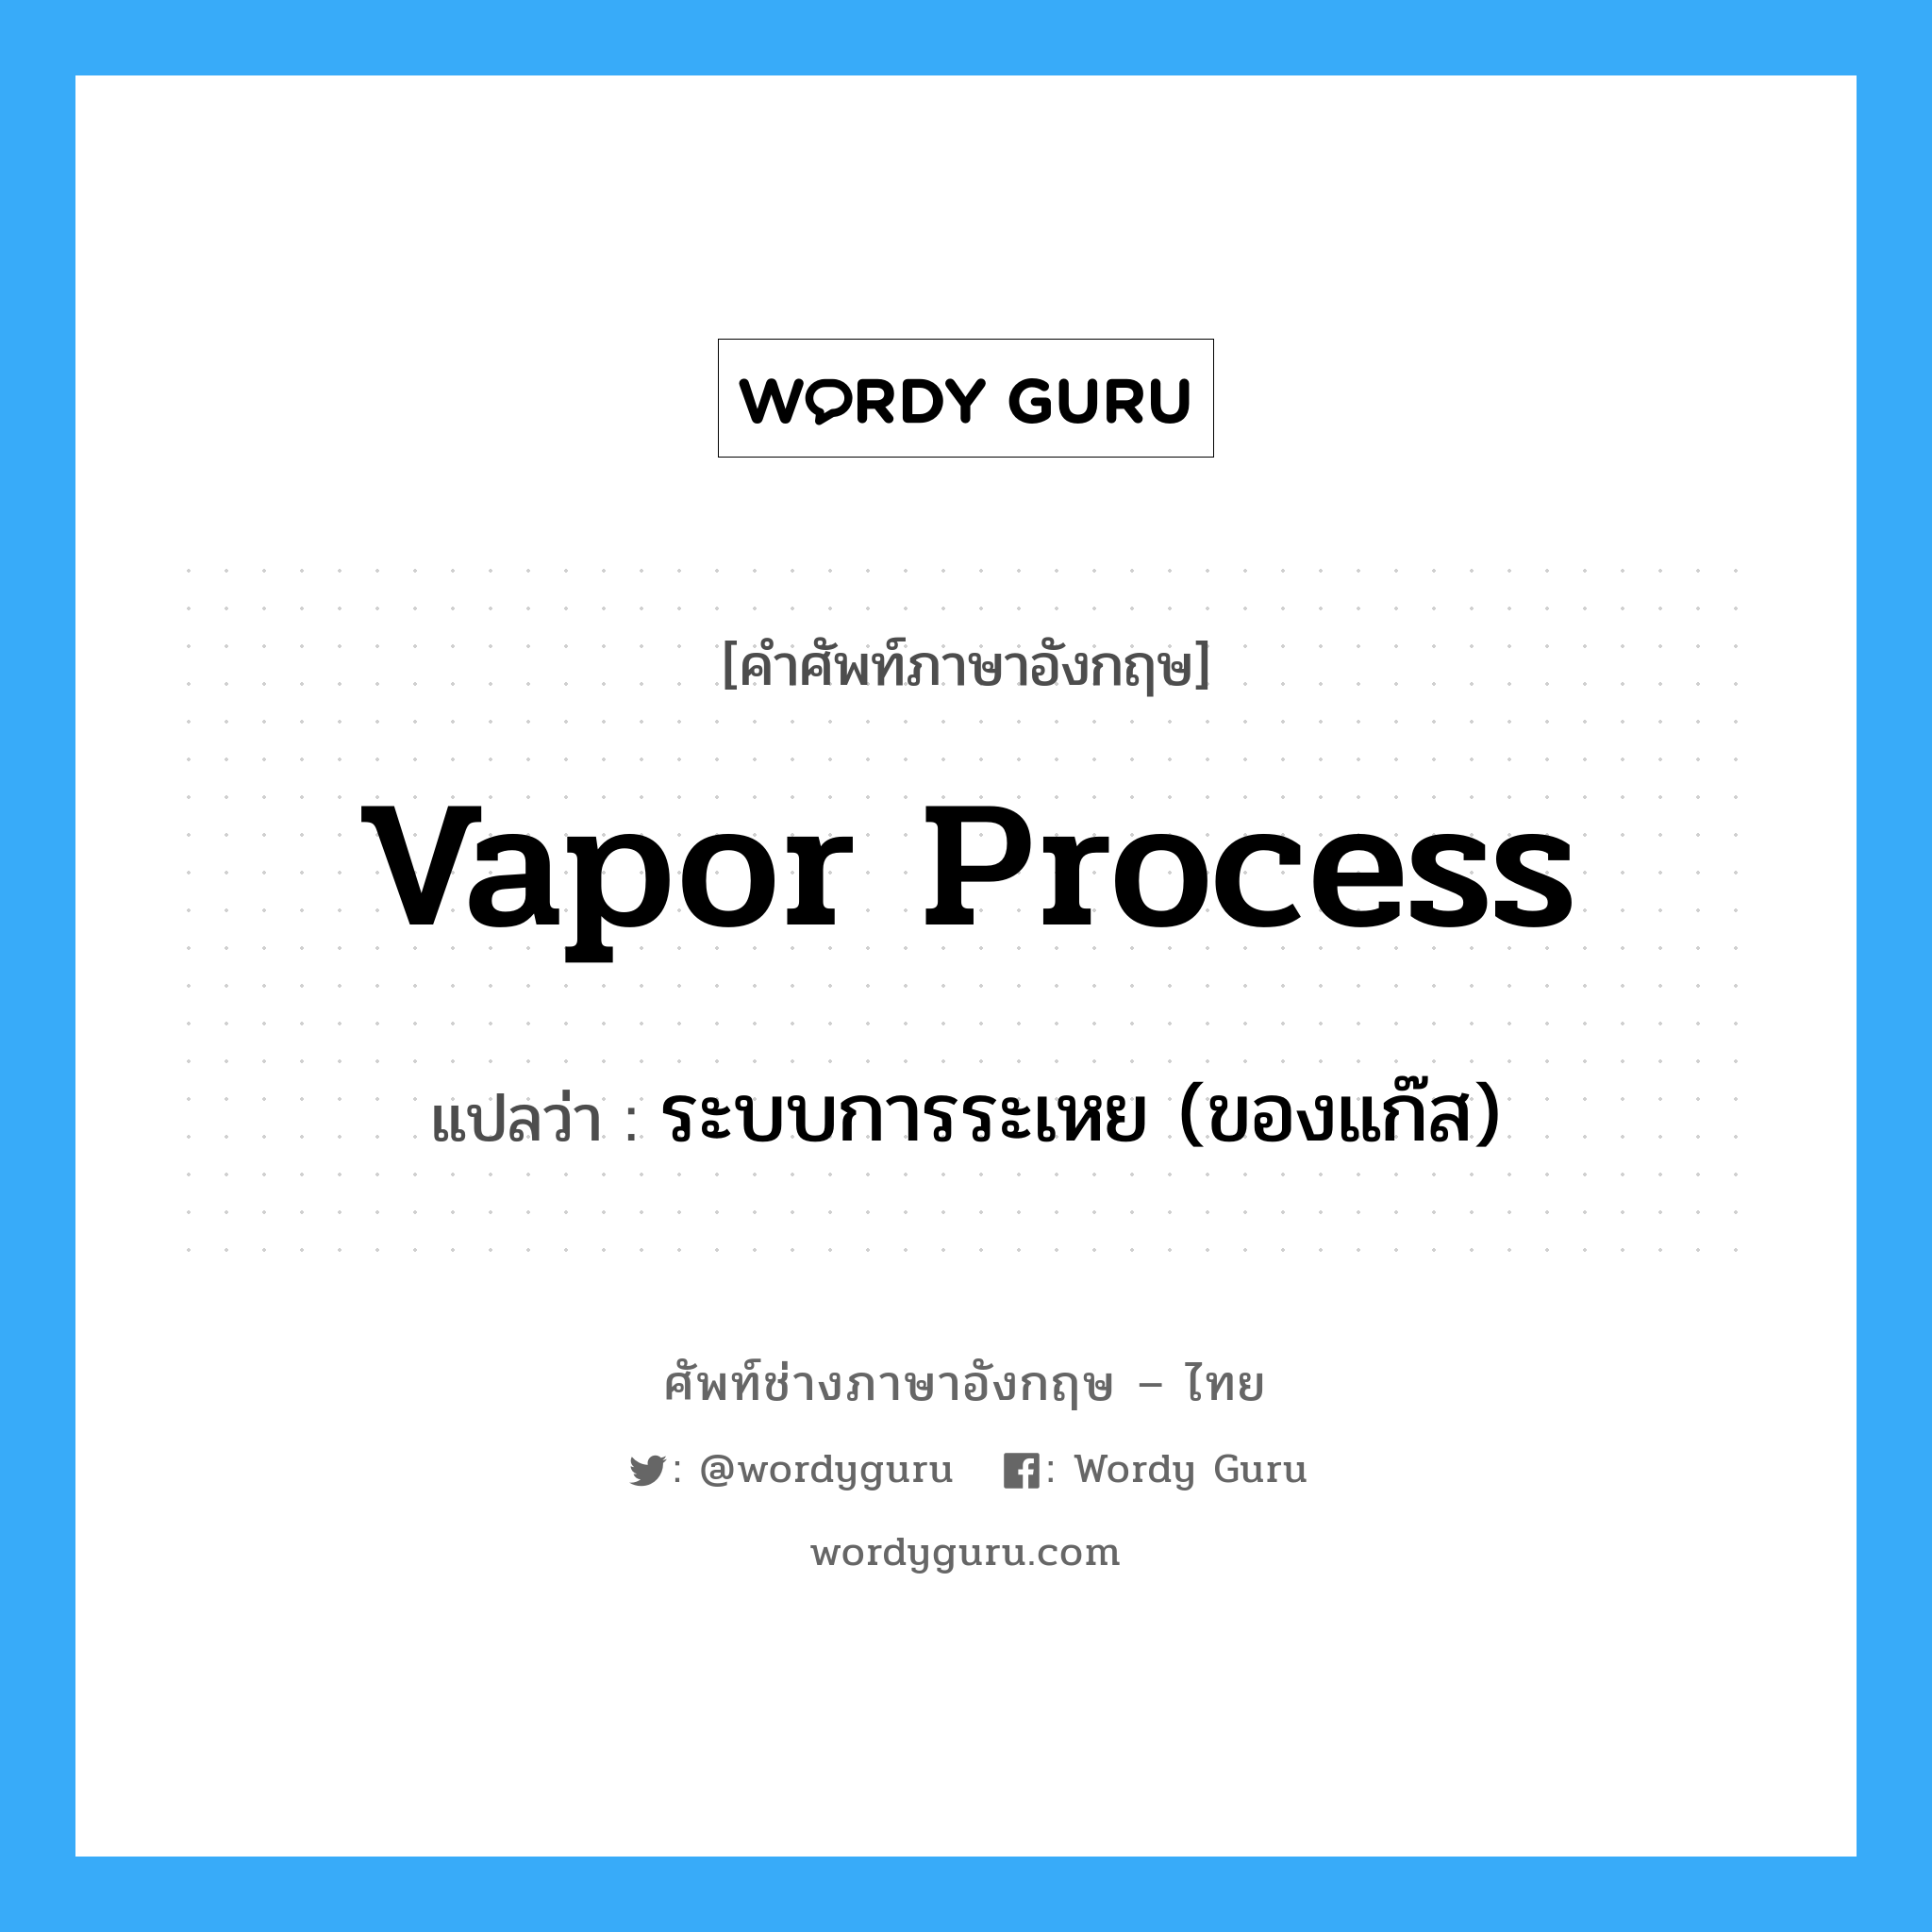 ระบบการระเหย (ของแก๊ส) ภาษาอังกฤษ?, คำศัพท์ช่างภาษาอังกฤษ - ไทย ระบบการระเหย (ของแก๊ส) คำศัพท์ภาษาอังกฤษ ระบบการระเหย (ของแก๊ส) แปลว่า vapor process